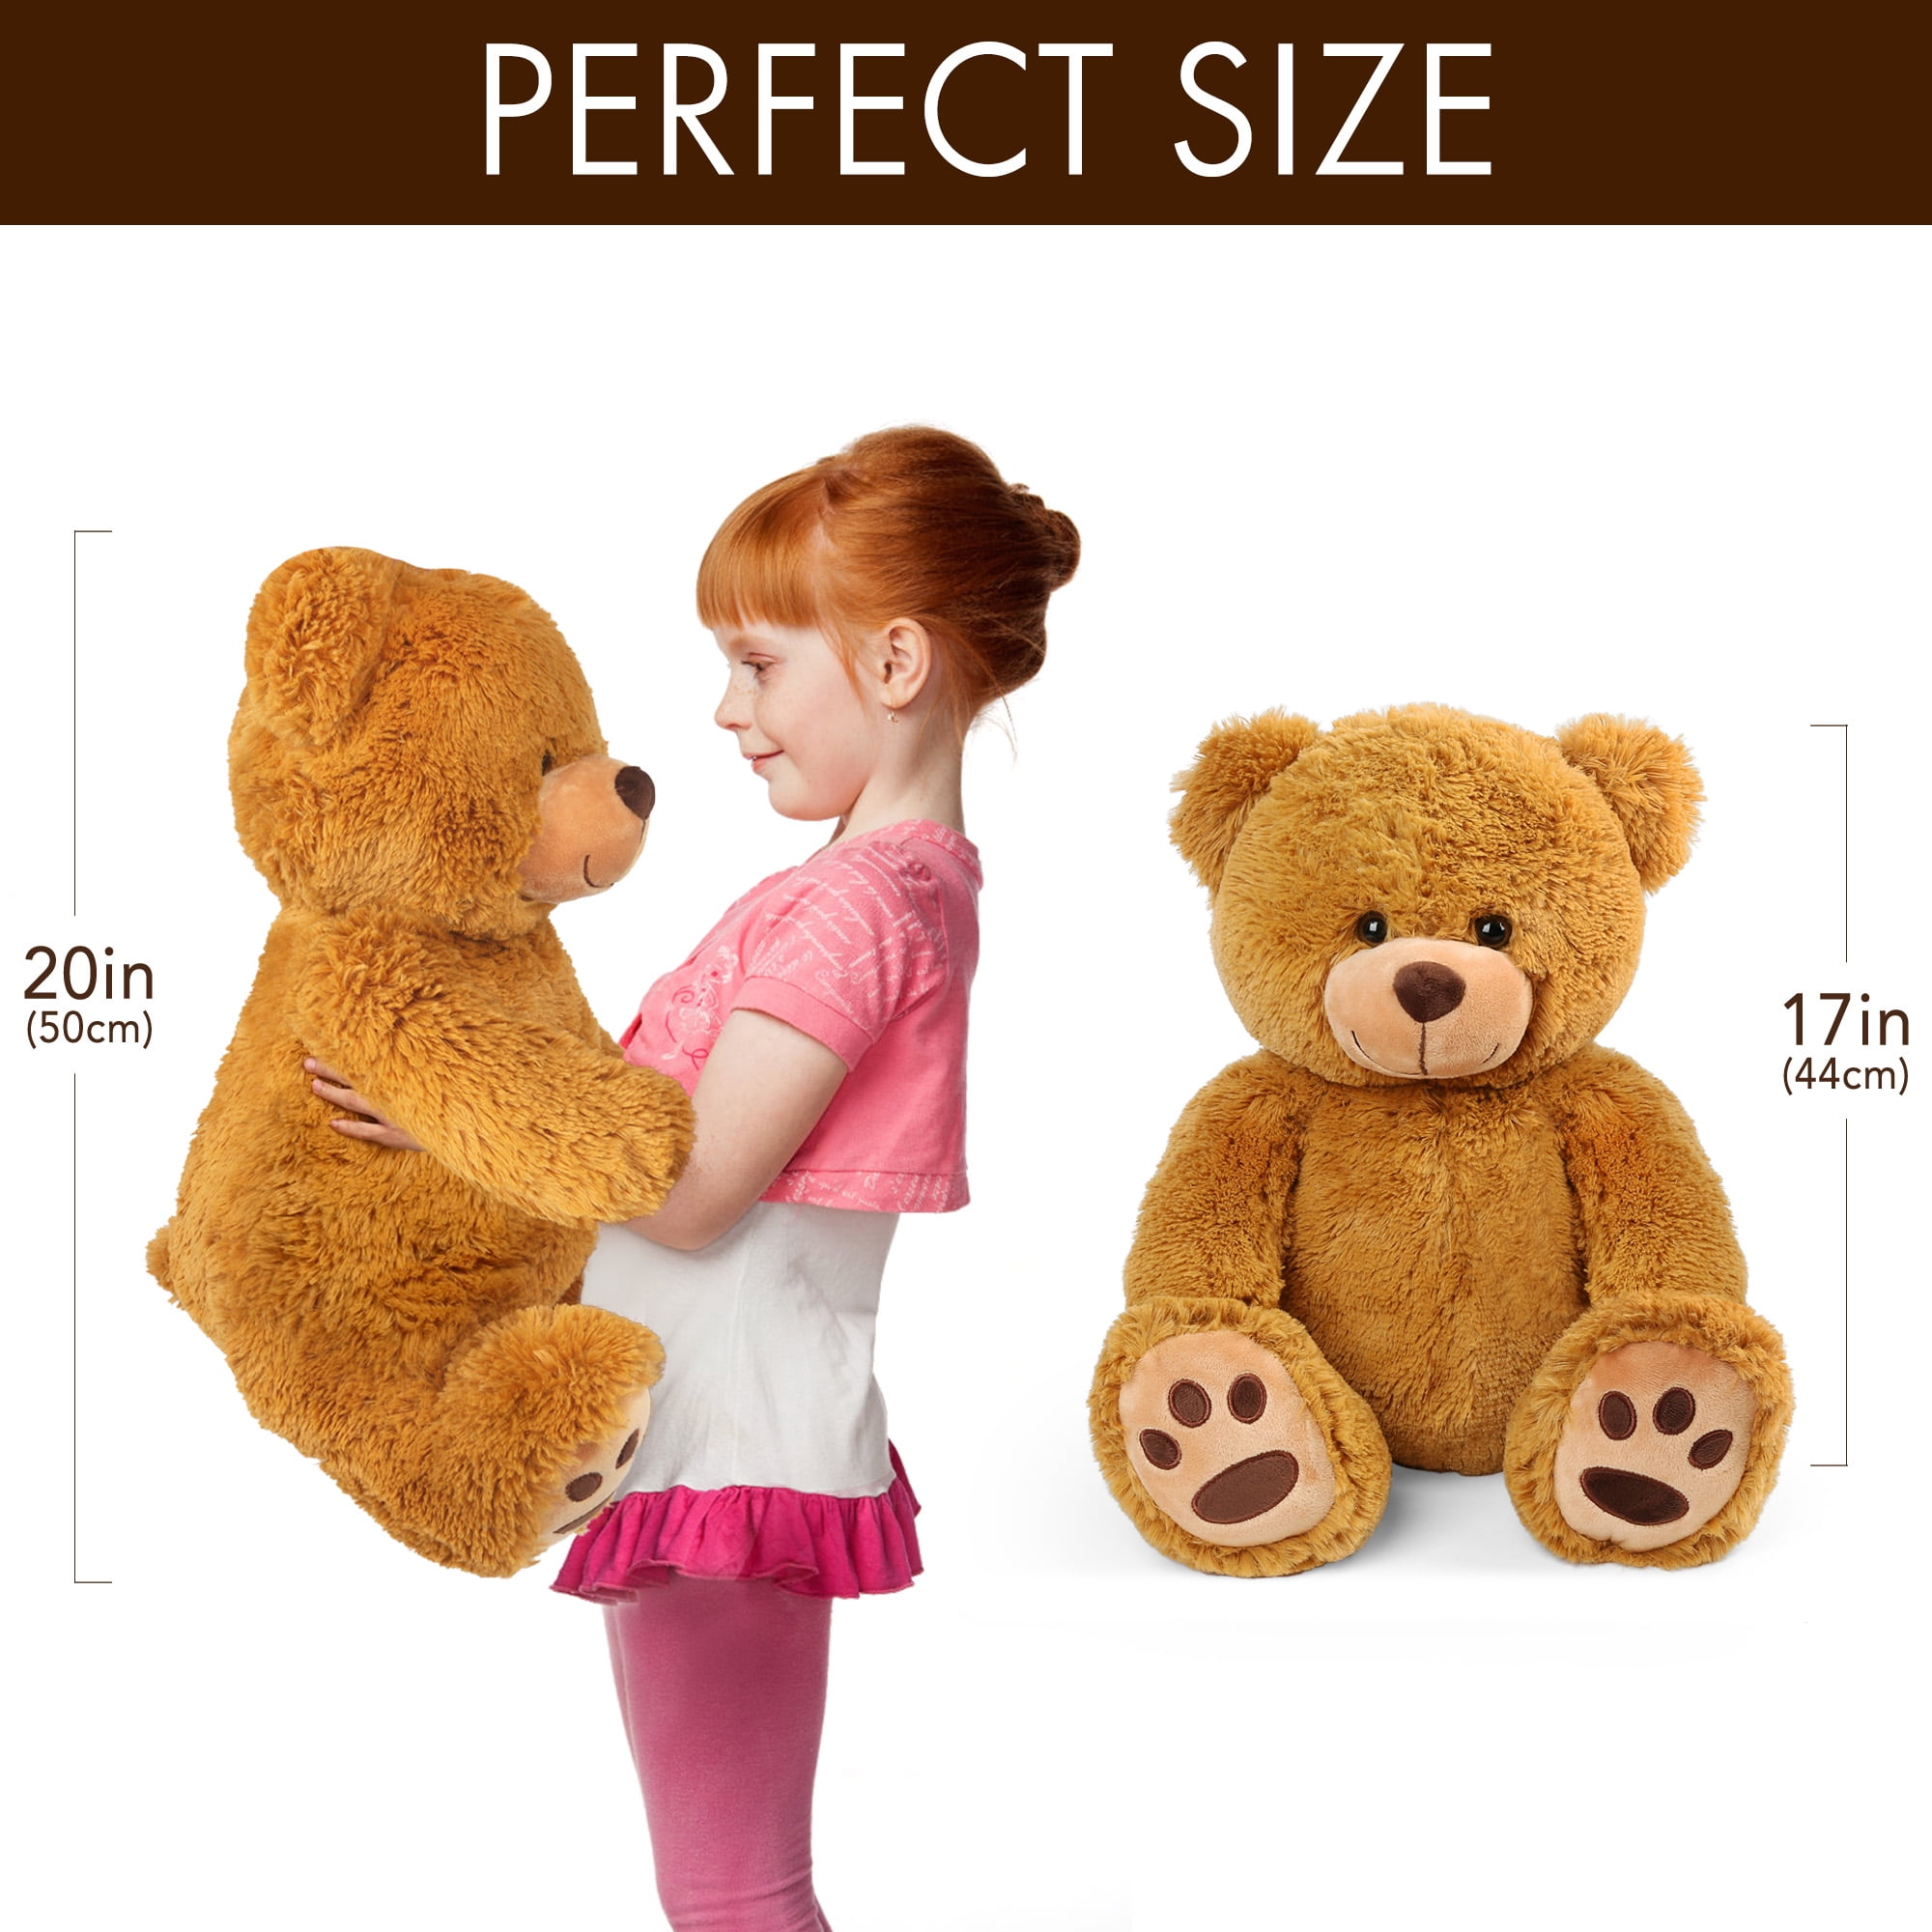 LotFancy Teddy Bear Stuffed Animals, 20 inch Soft Cute Teddy Bear